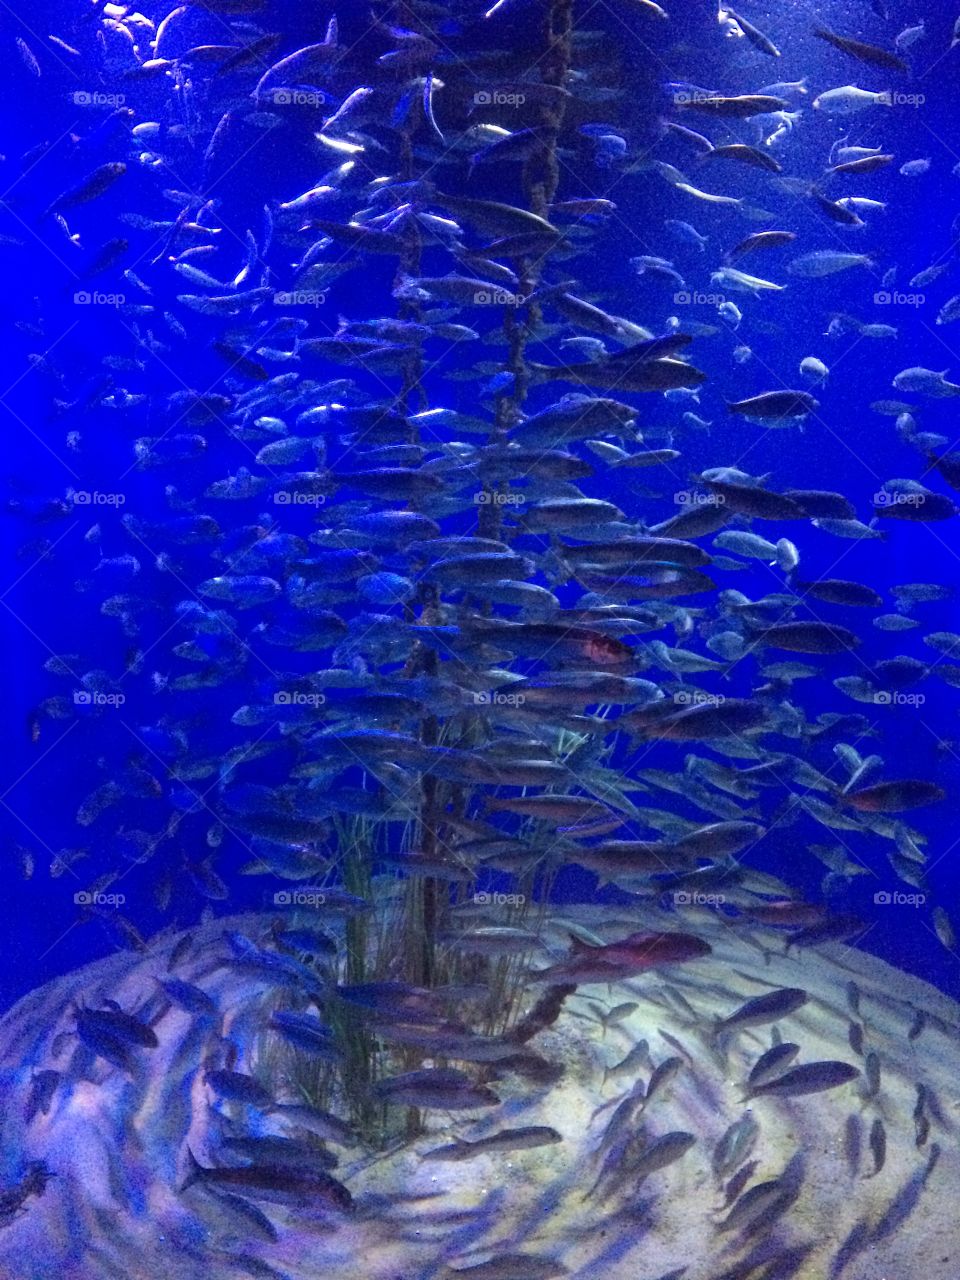 Observing fishes in aquarium Copenhagen 